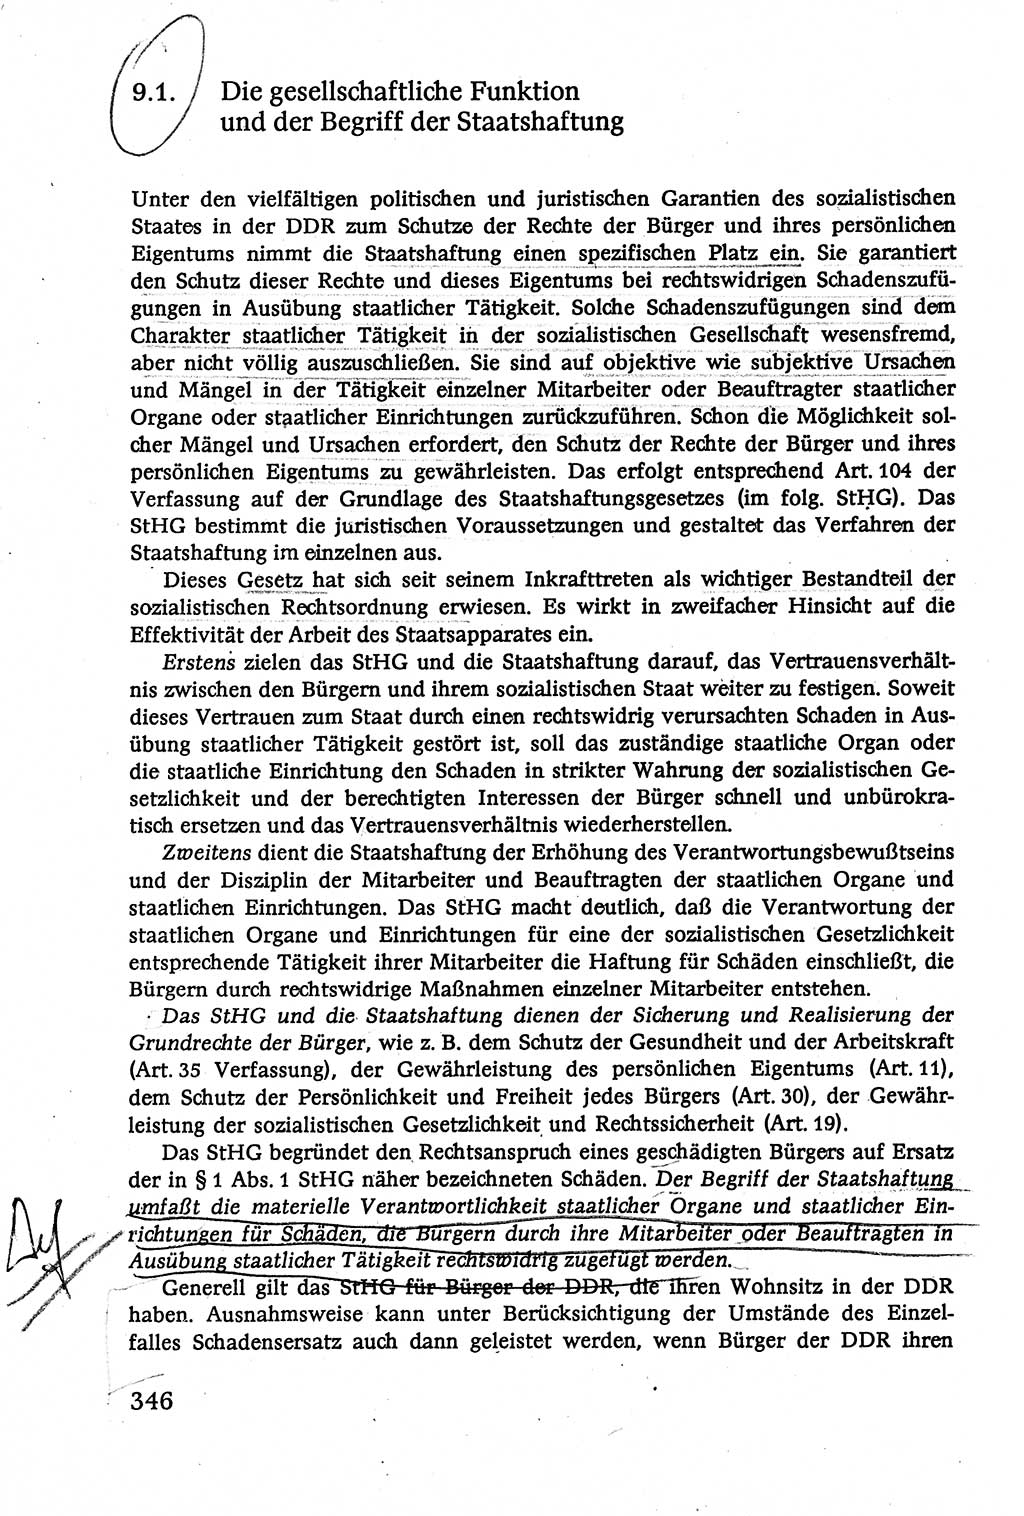 Verwaltungsrecht [Deutsche Demokratische Republik (DDR)], Lehrbuch 1979, Seite 346 (Verw.-R. DDR Lb. 1979, S. 346)